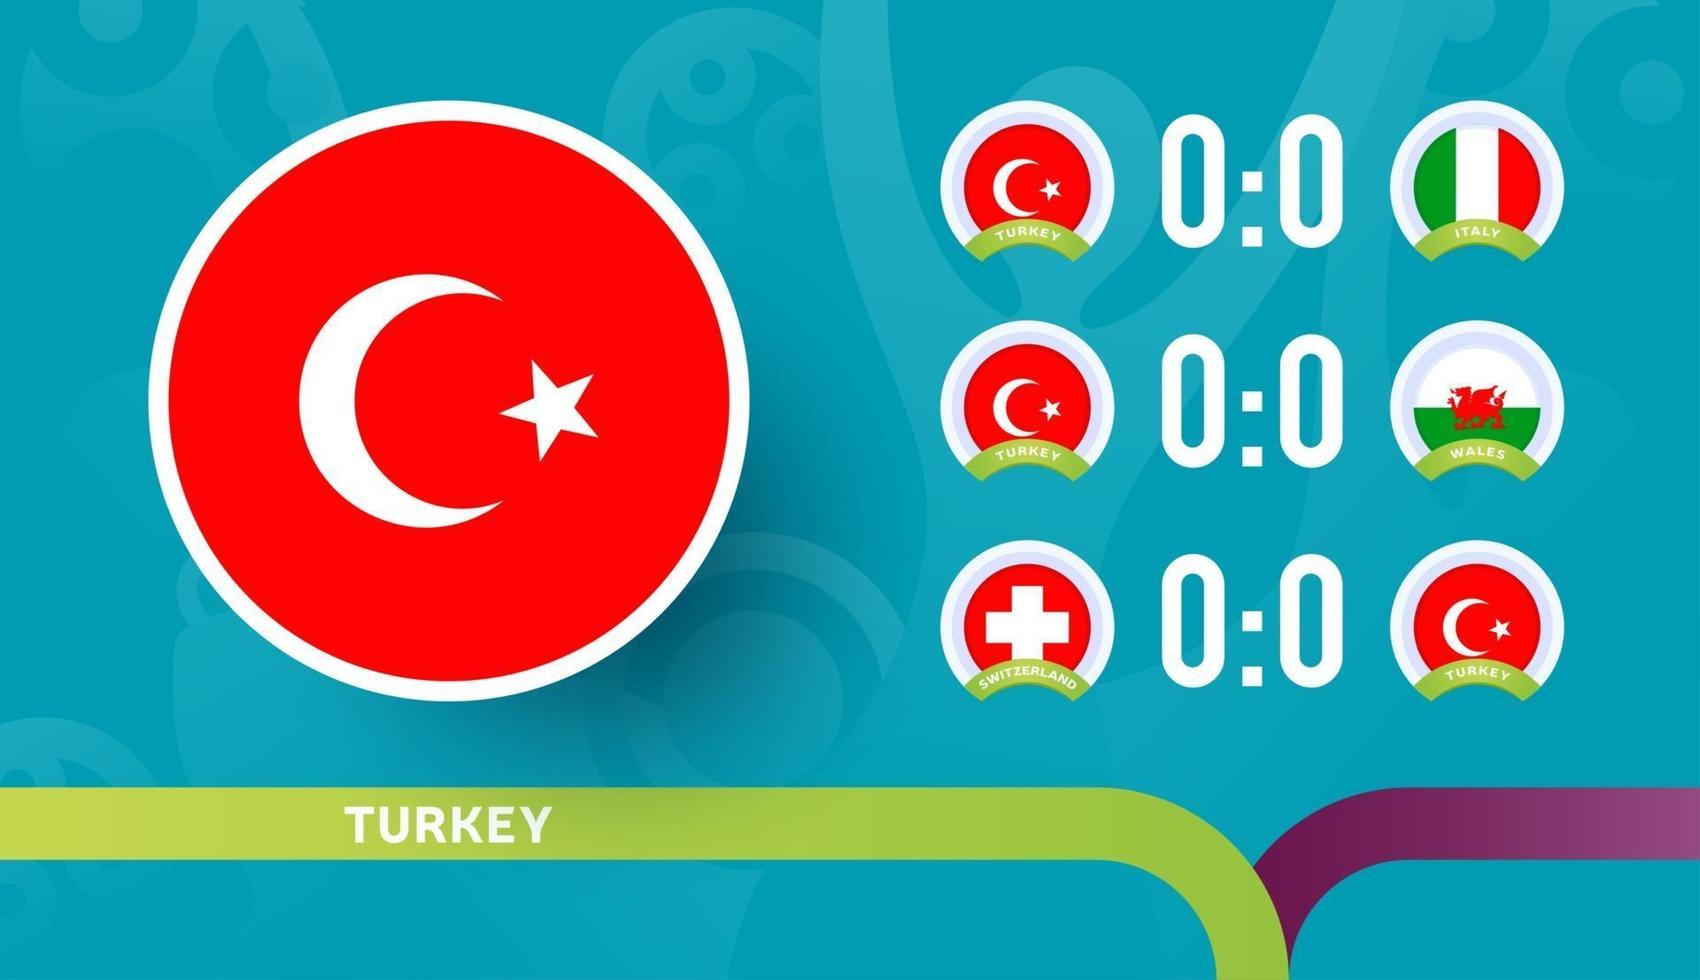 a equipe nacional da turquia agenda jogos na fase final do campeonato de futebol de 2020. ilustração em vetor de partidas de futebol de 2020.